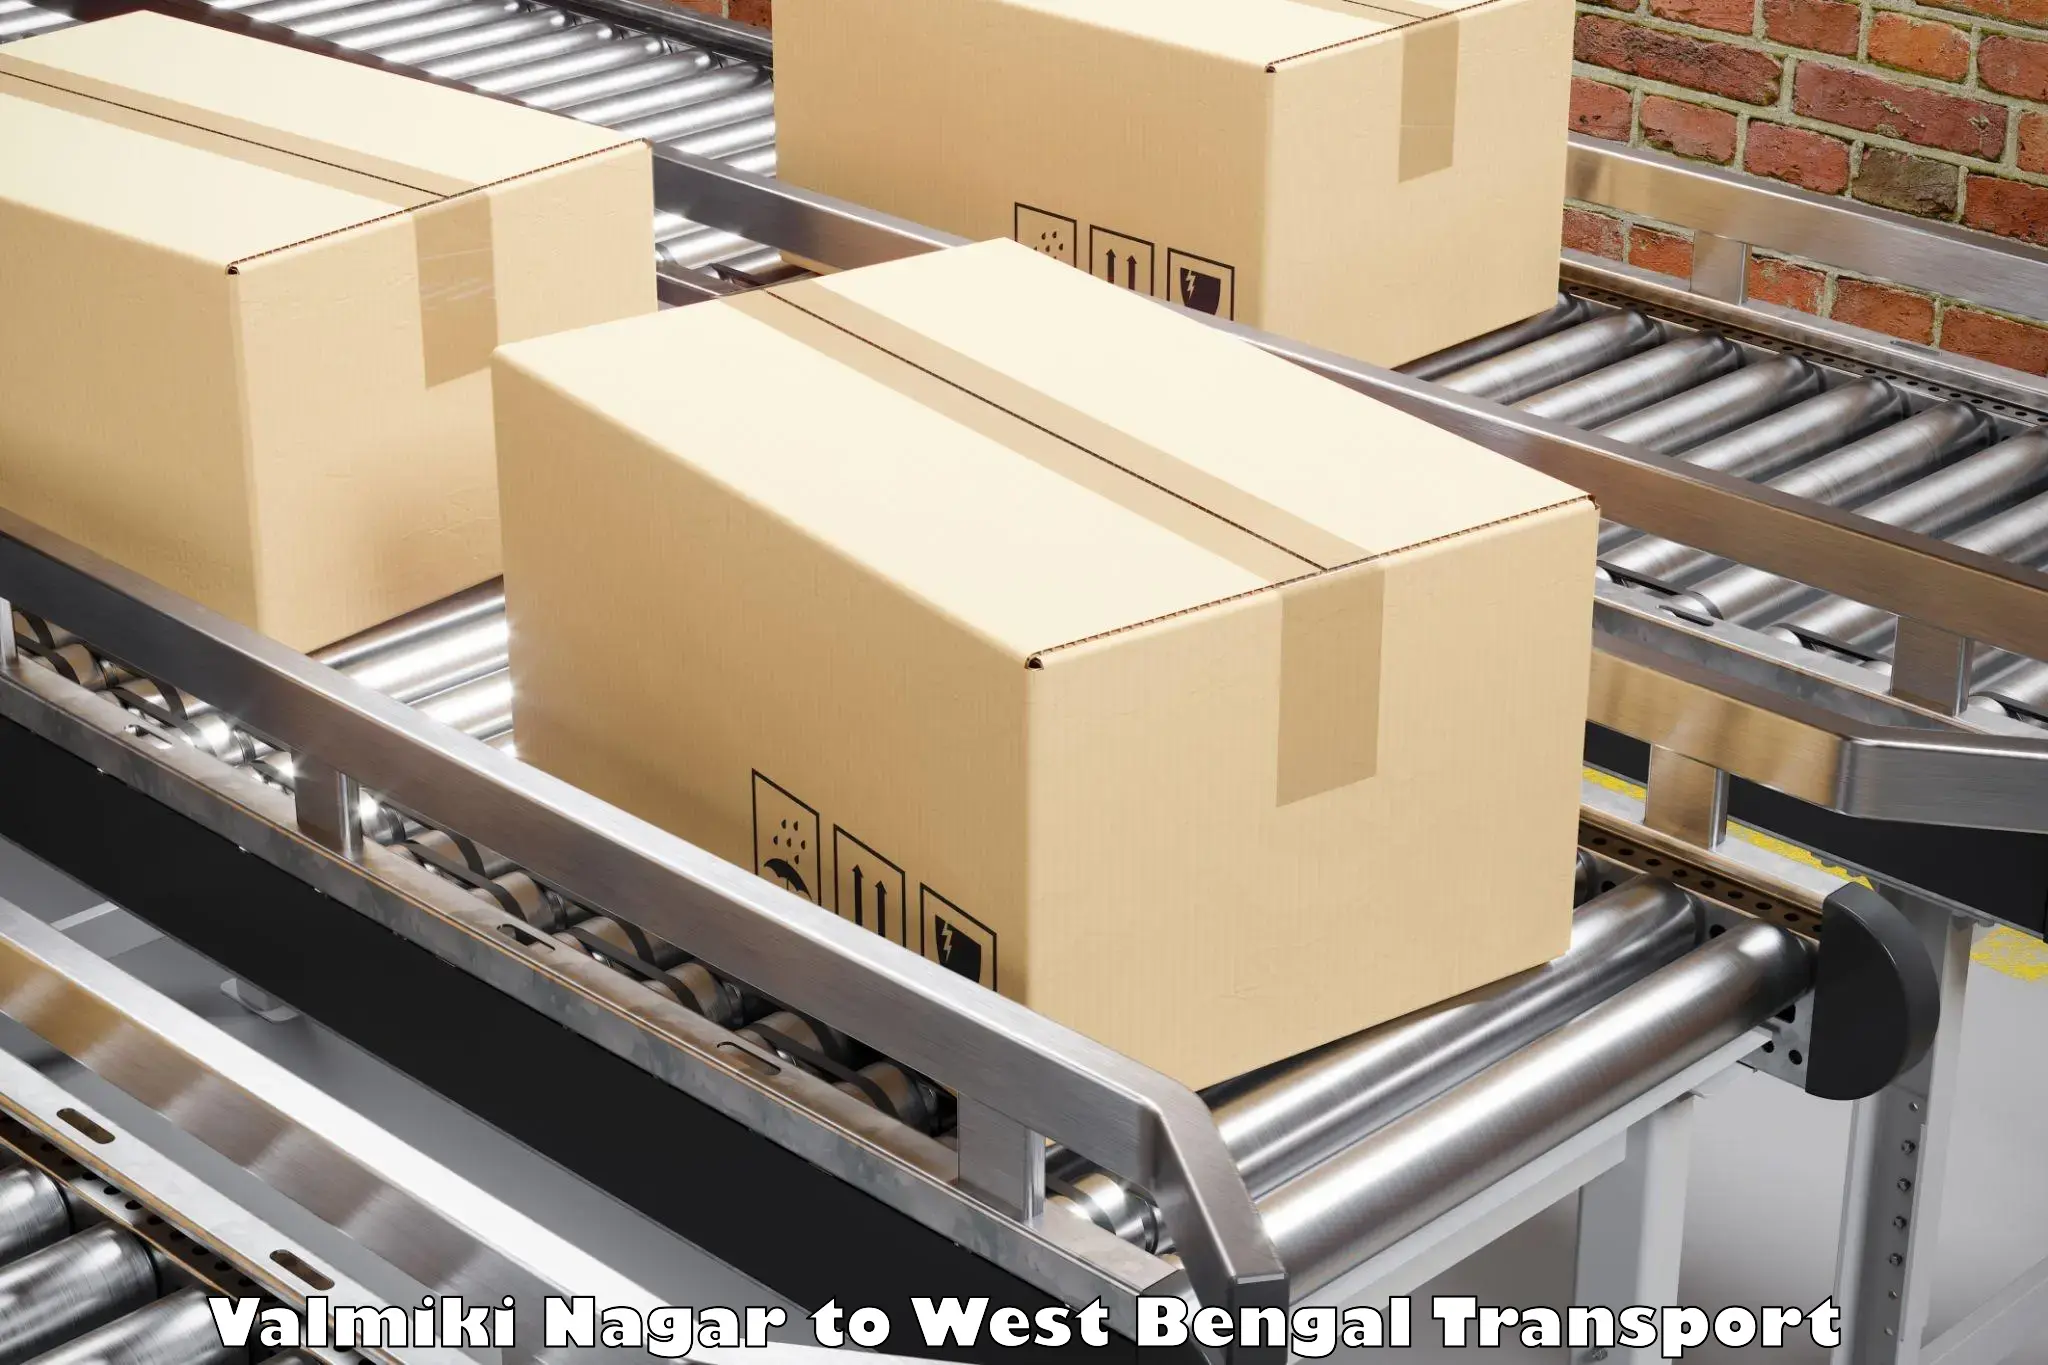 Furniture transport service Valmiki Nagar to Burdwan